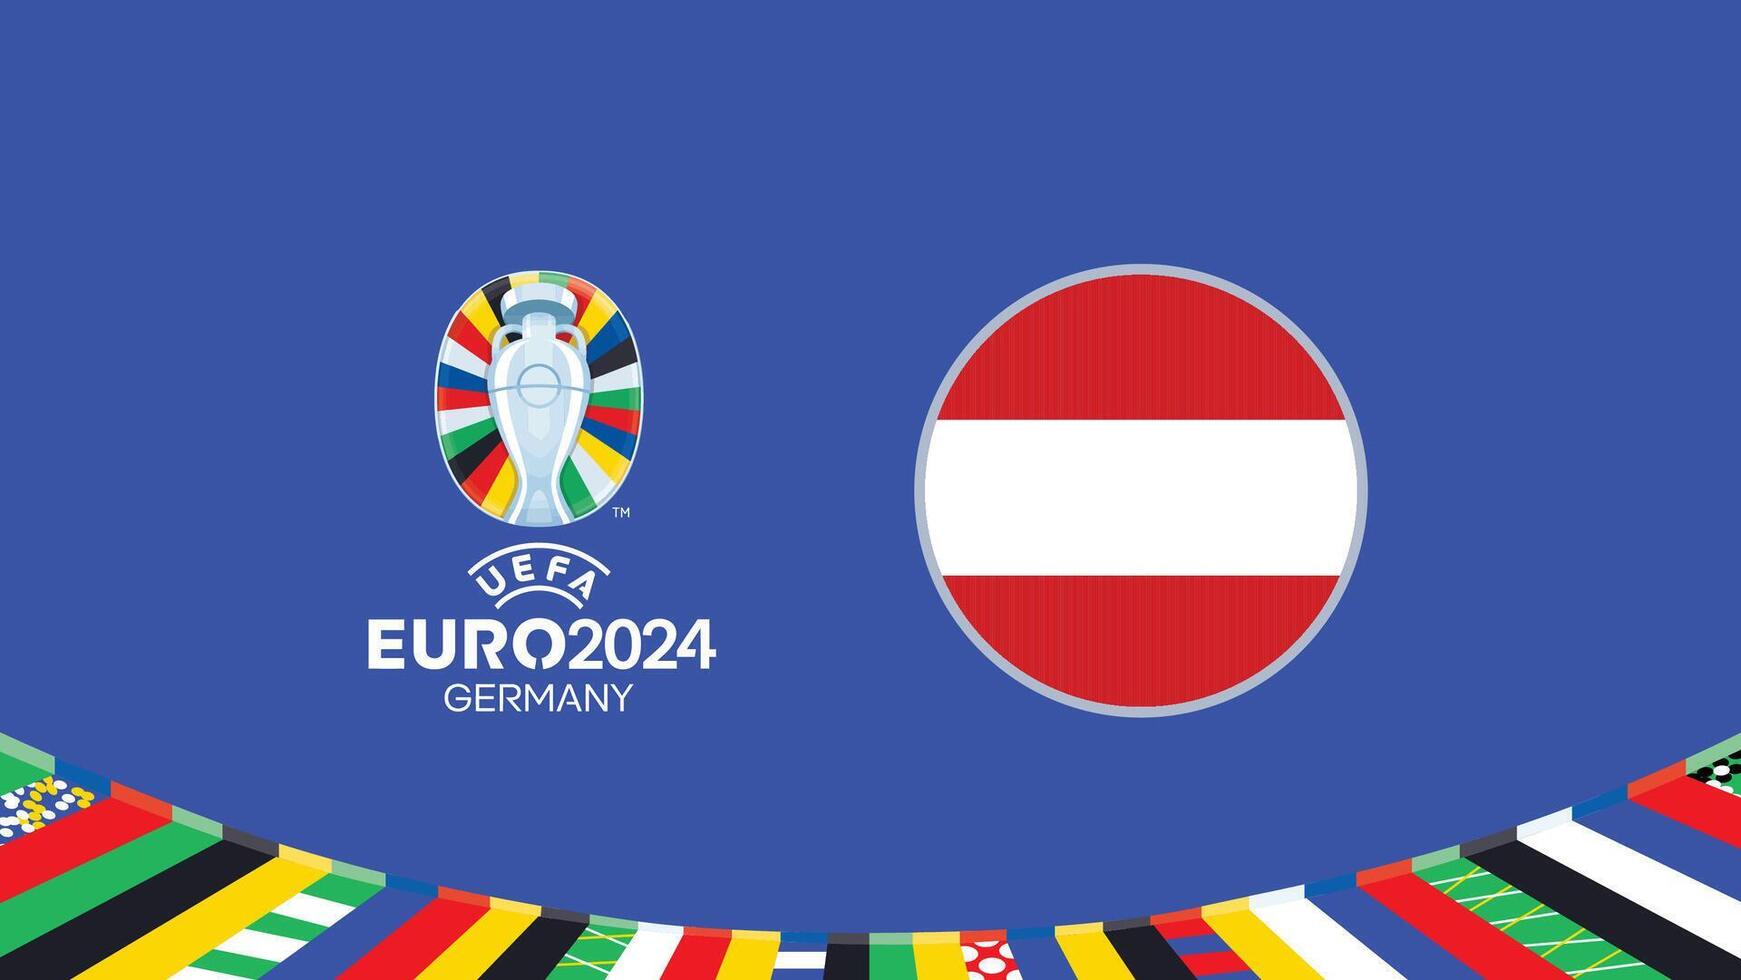 Euro 2024 Deutschland Österreich Flagge Teams Design mit offiziell Symbol Logo abstrakt Länder europäisch Fußball Illustration vektor